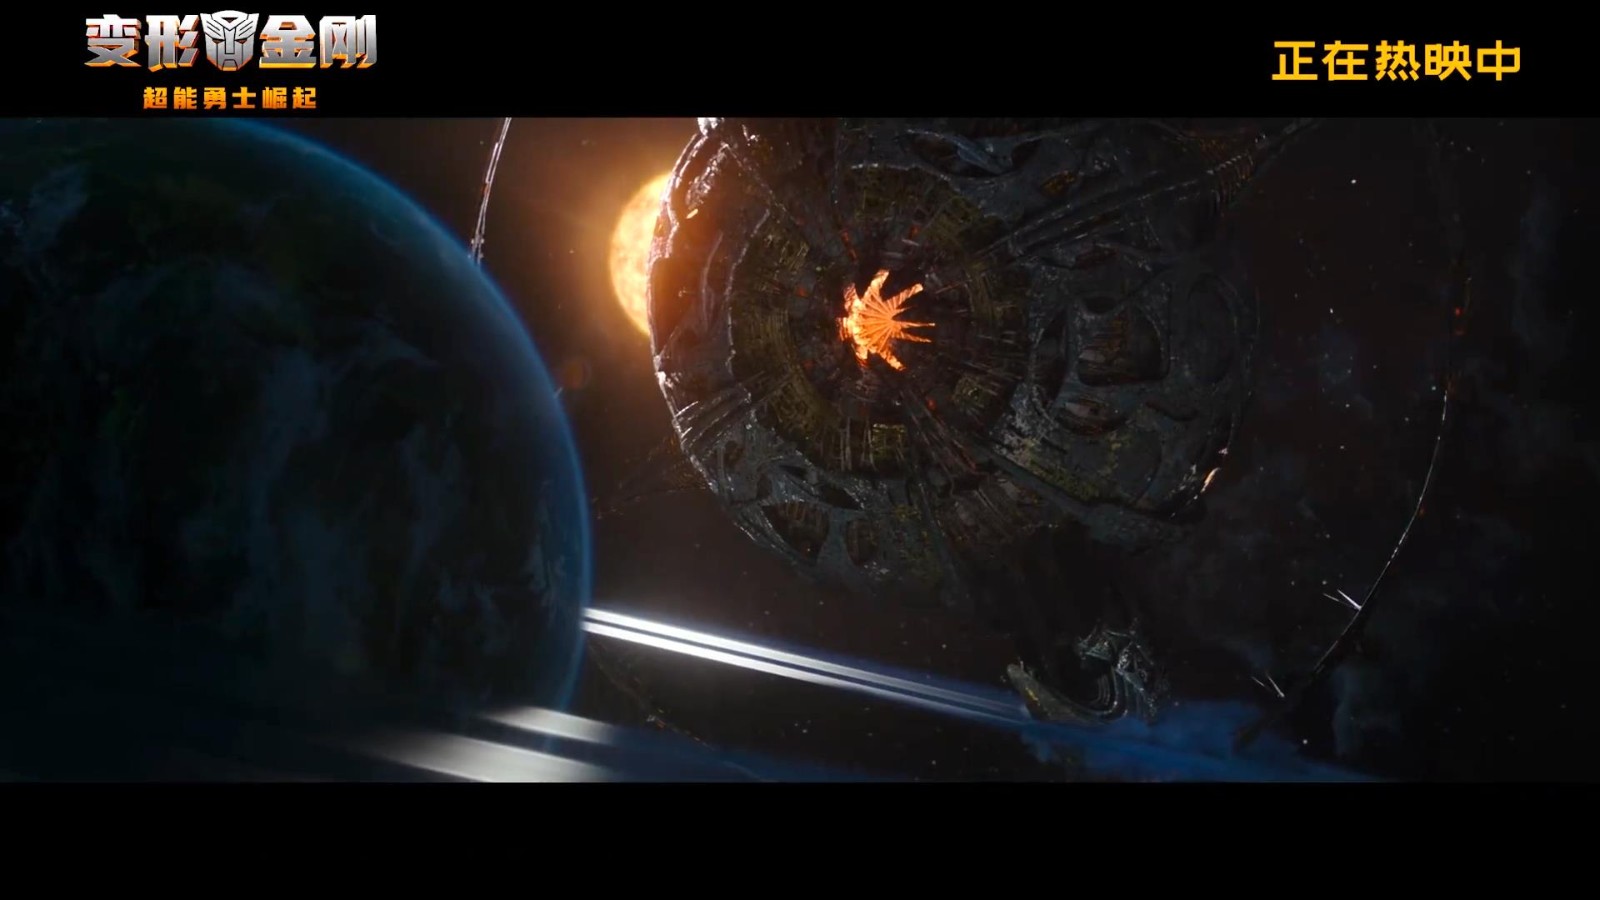 《变形金刚7》上映预告发布 保卫地球新战役打响